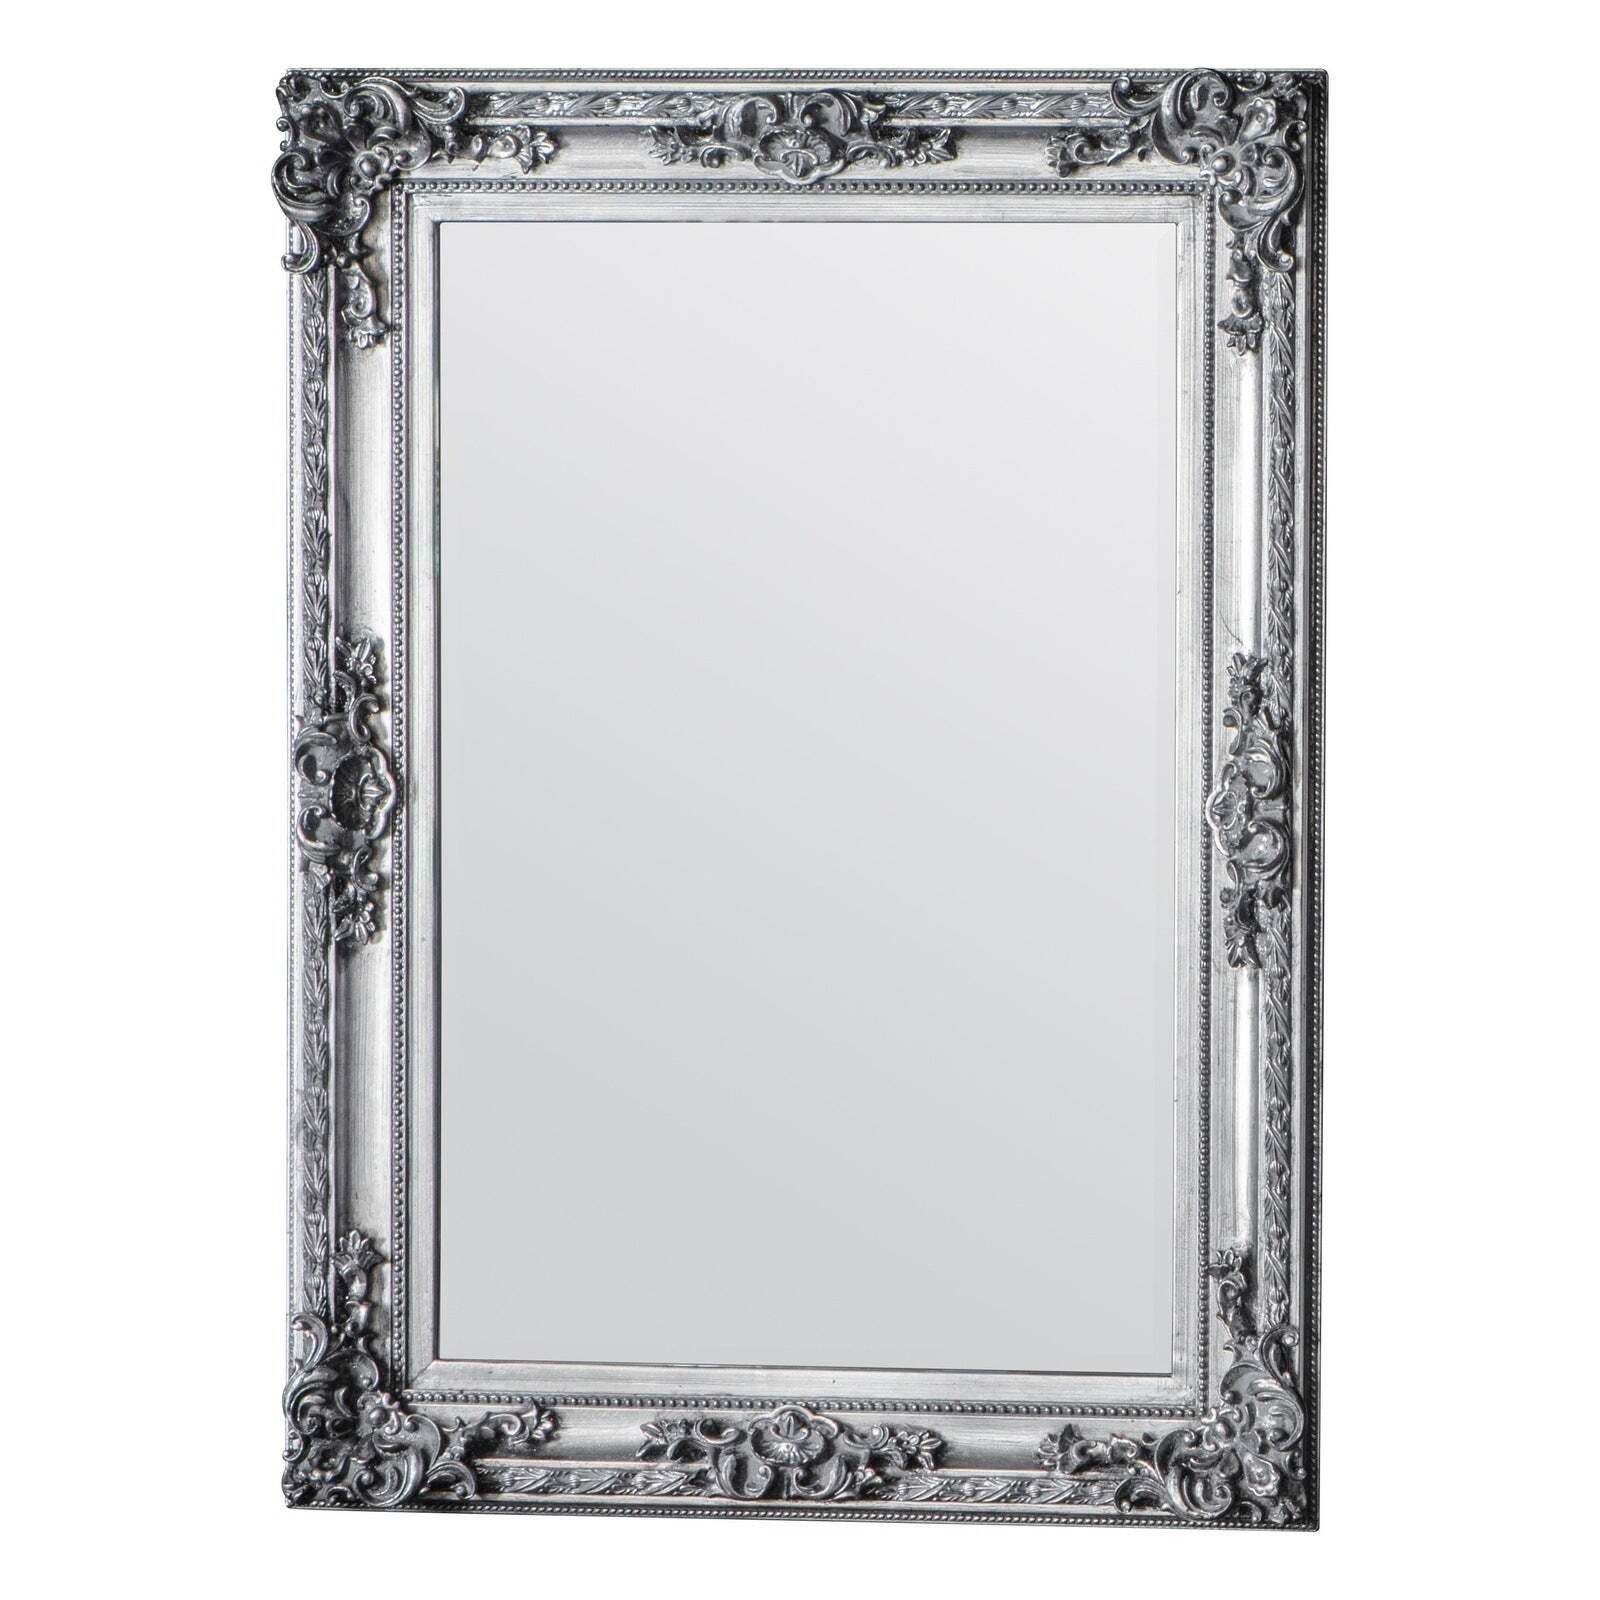 Gallery Interiors Altori Rectangle Mirror in Silver - image 1